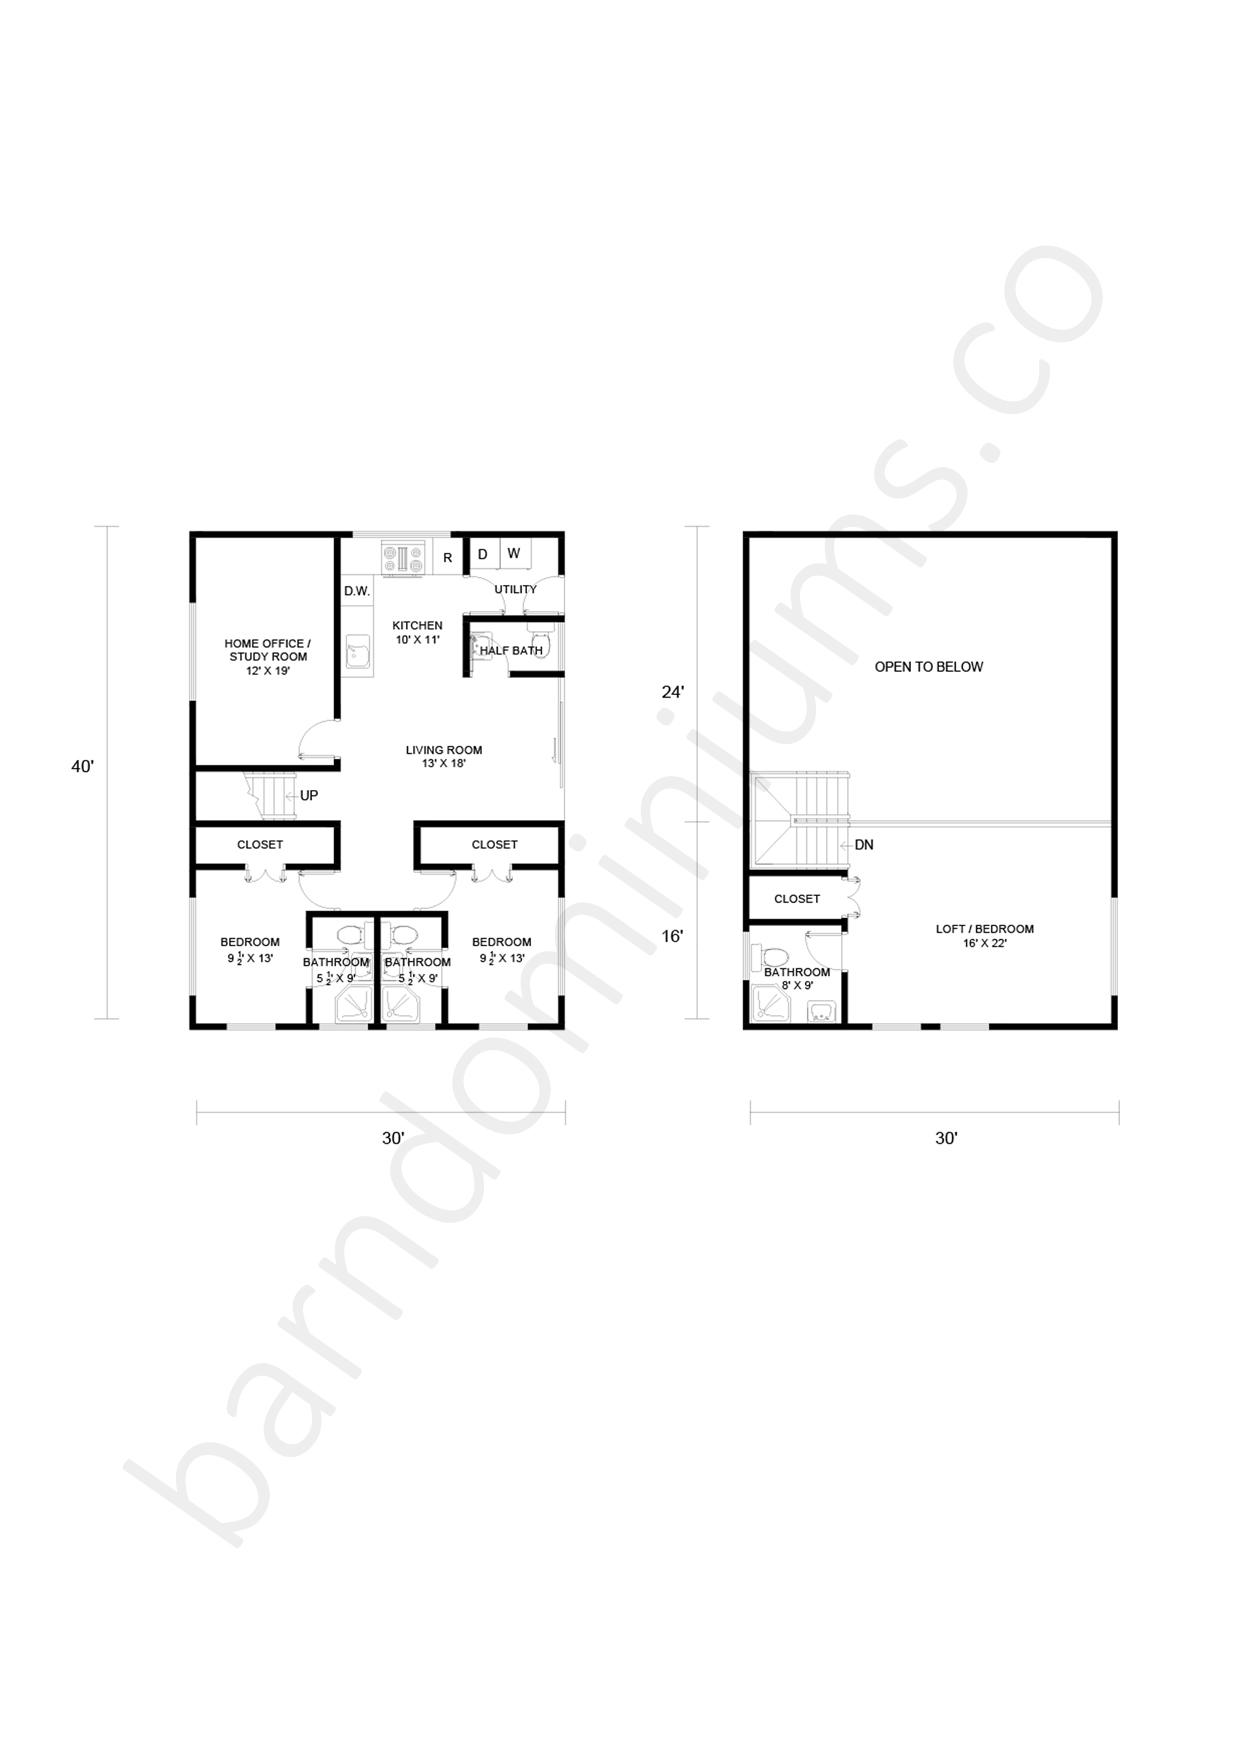 Barndominium Floor Plans 60 X 100